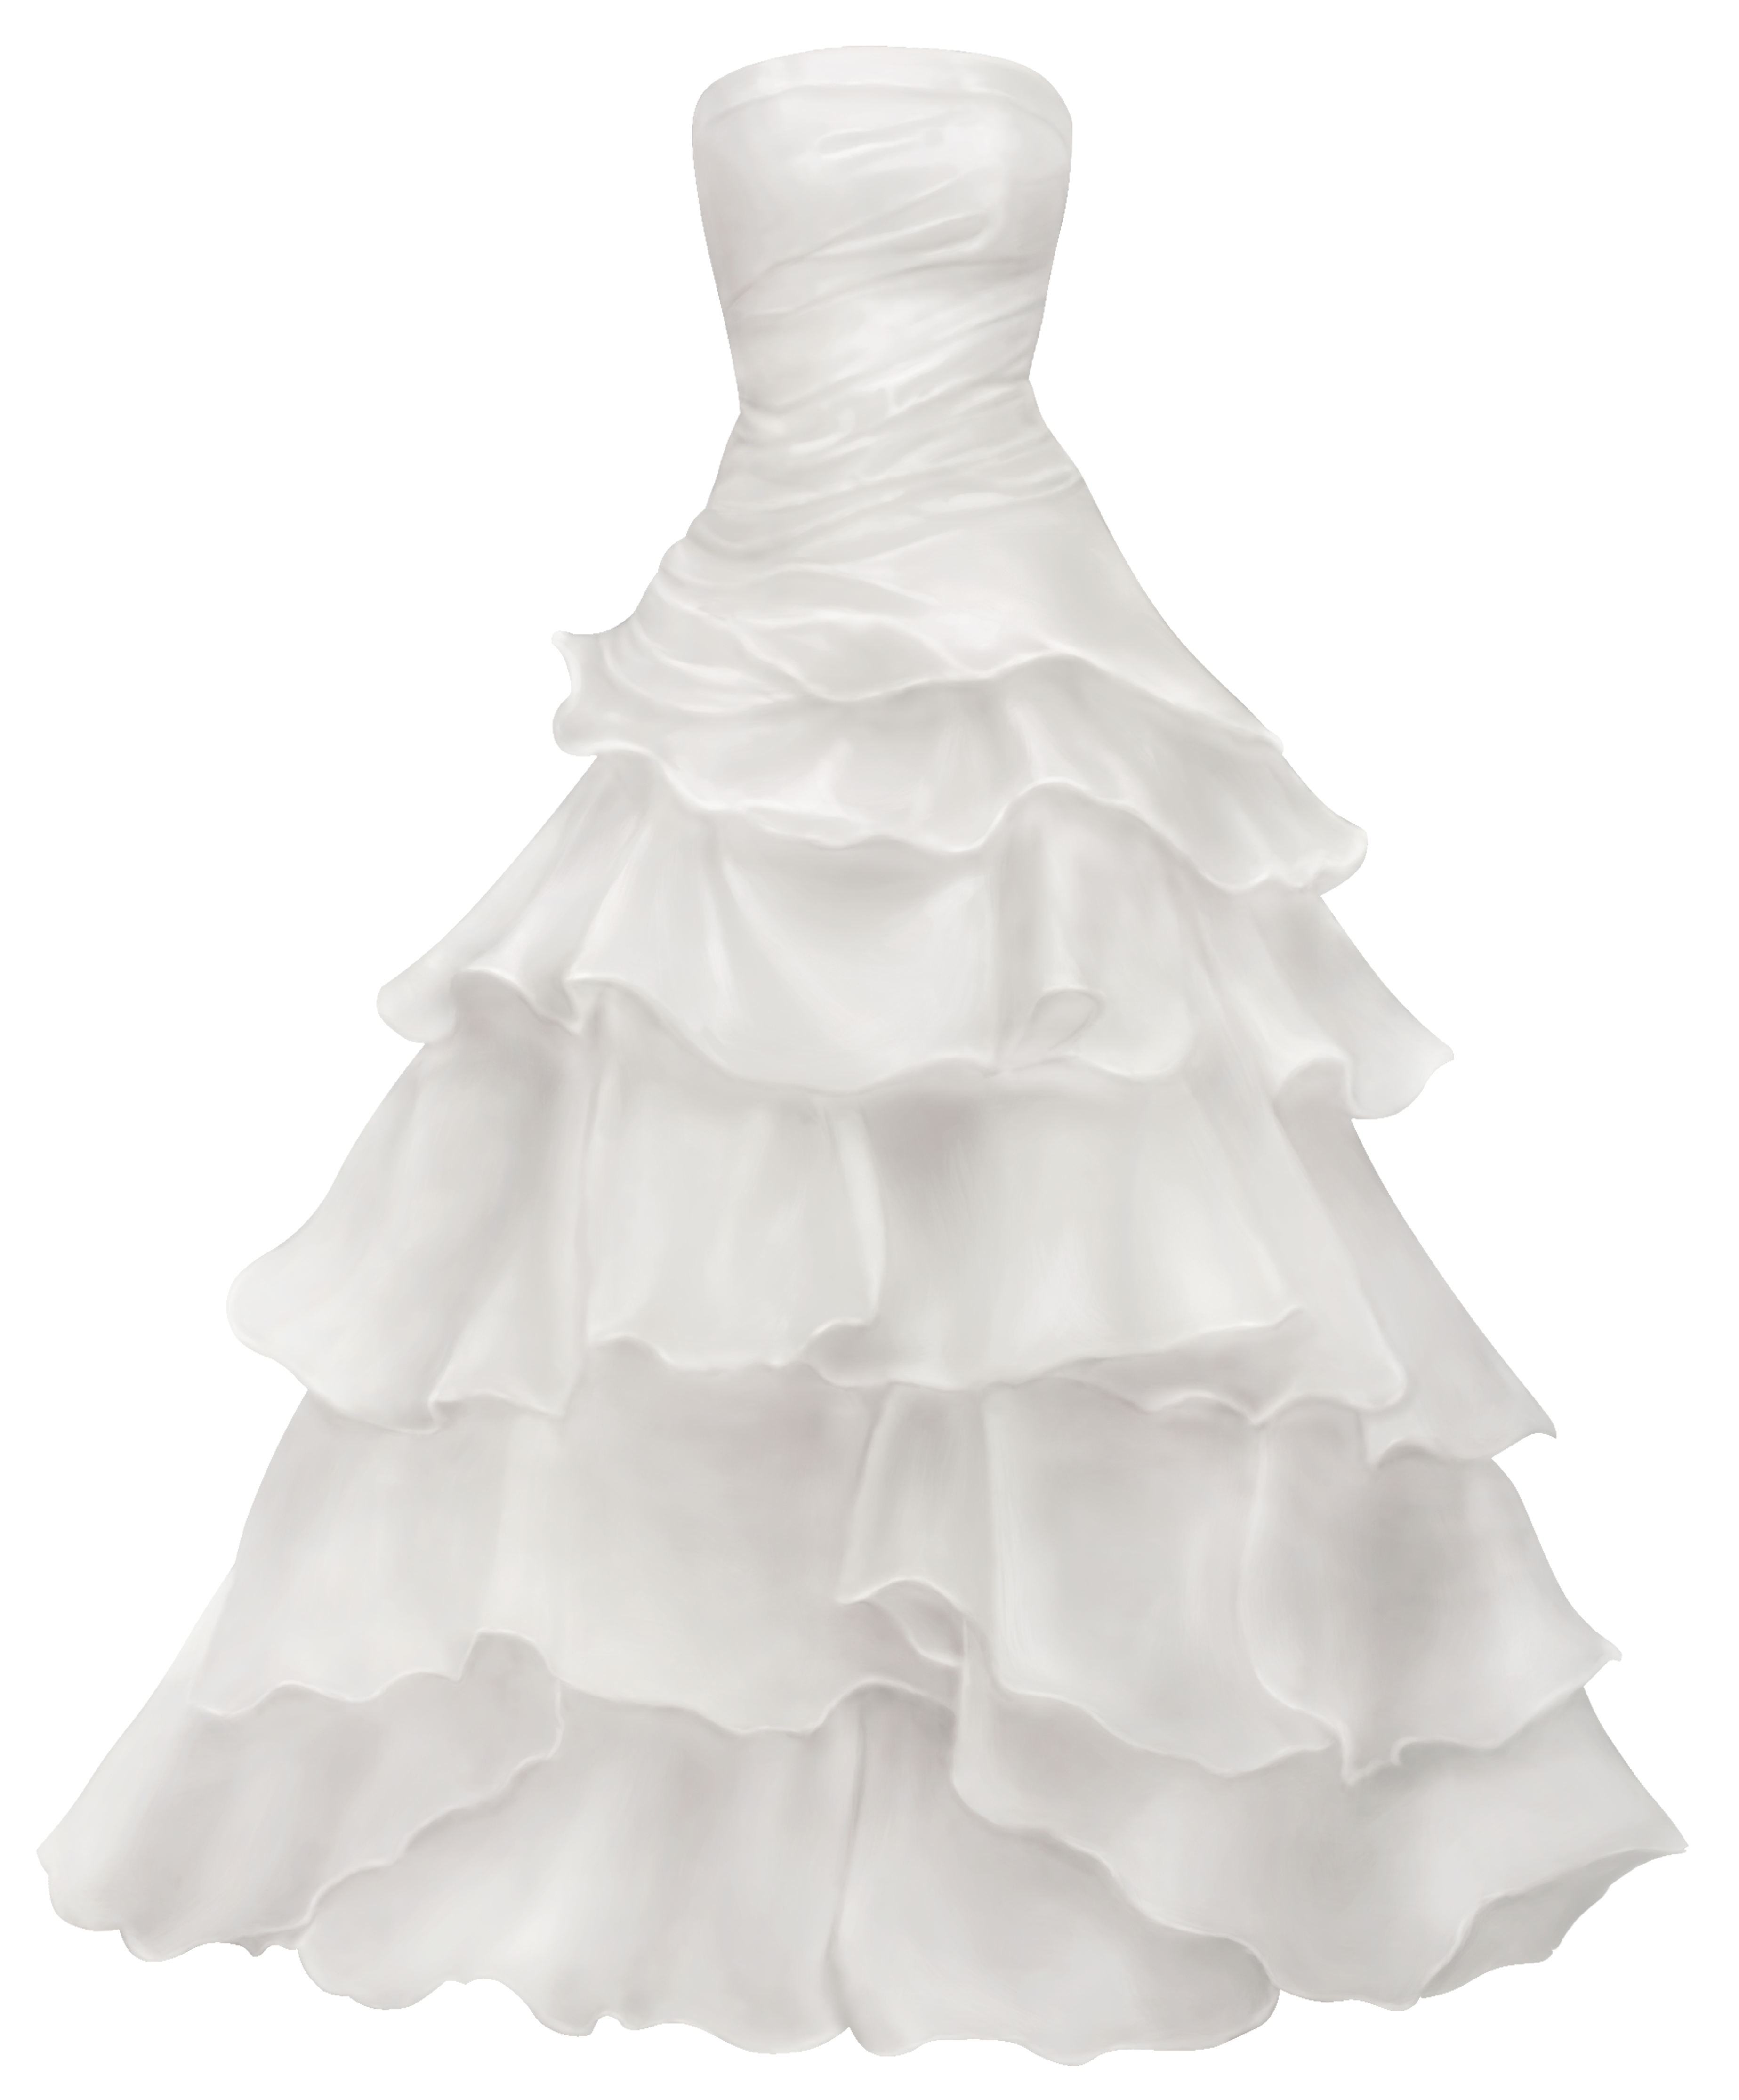 Ball Gown Wedding Dress PNG Clip Art - Best WEB Clipart